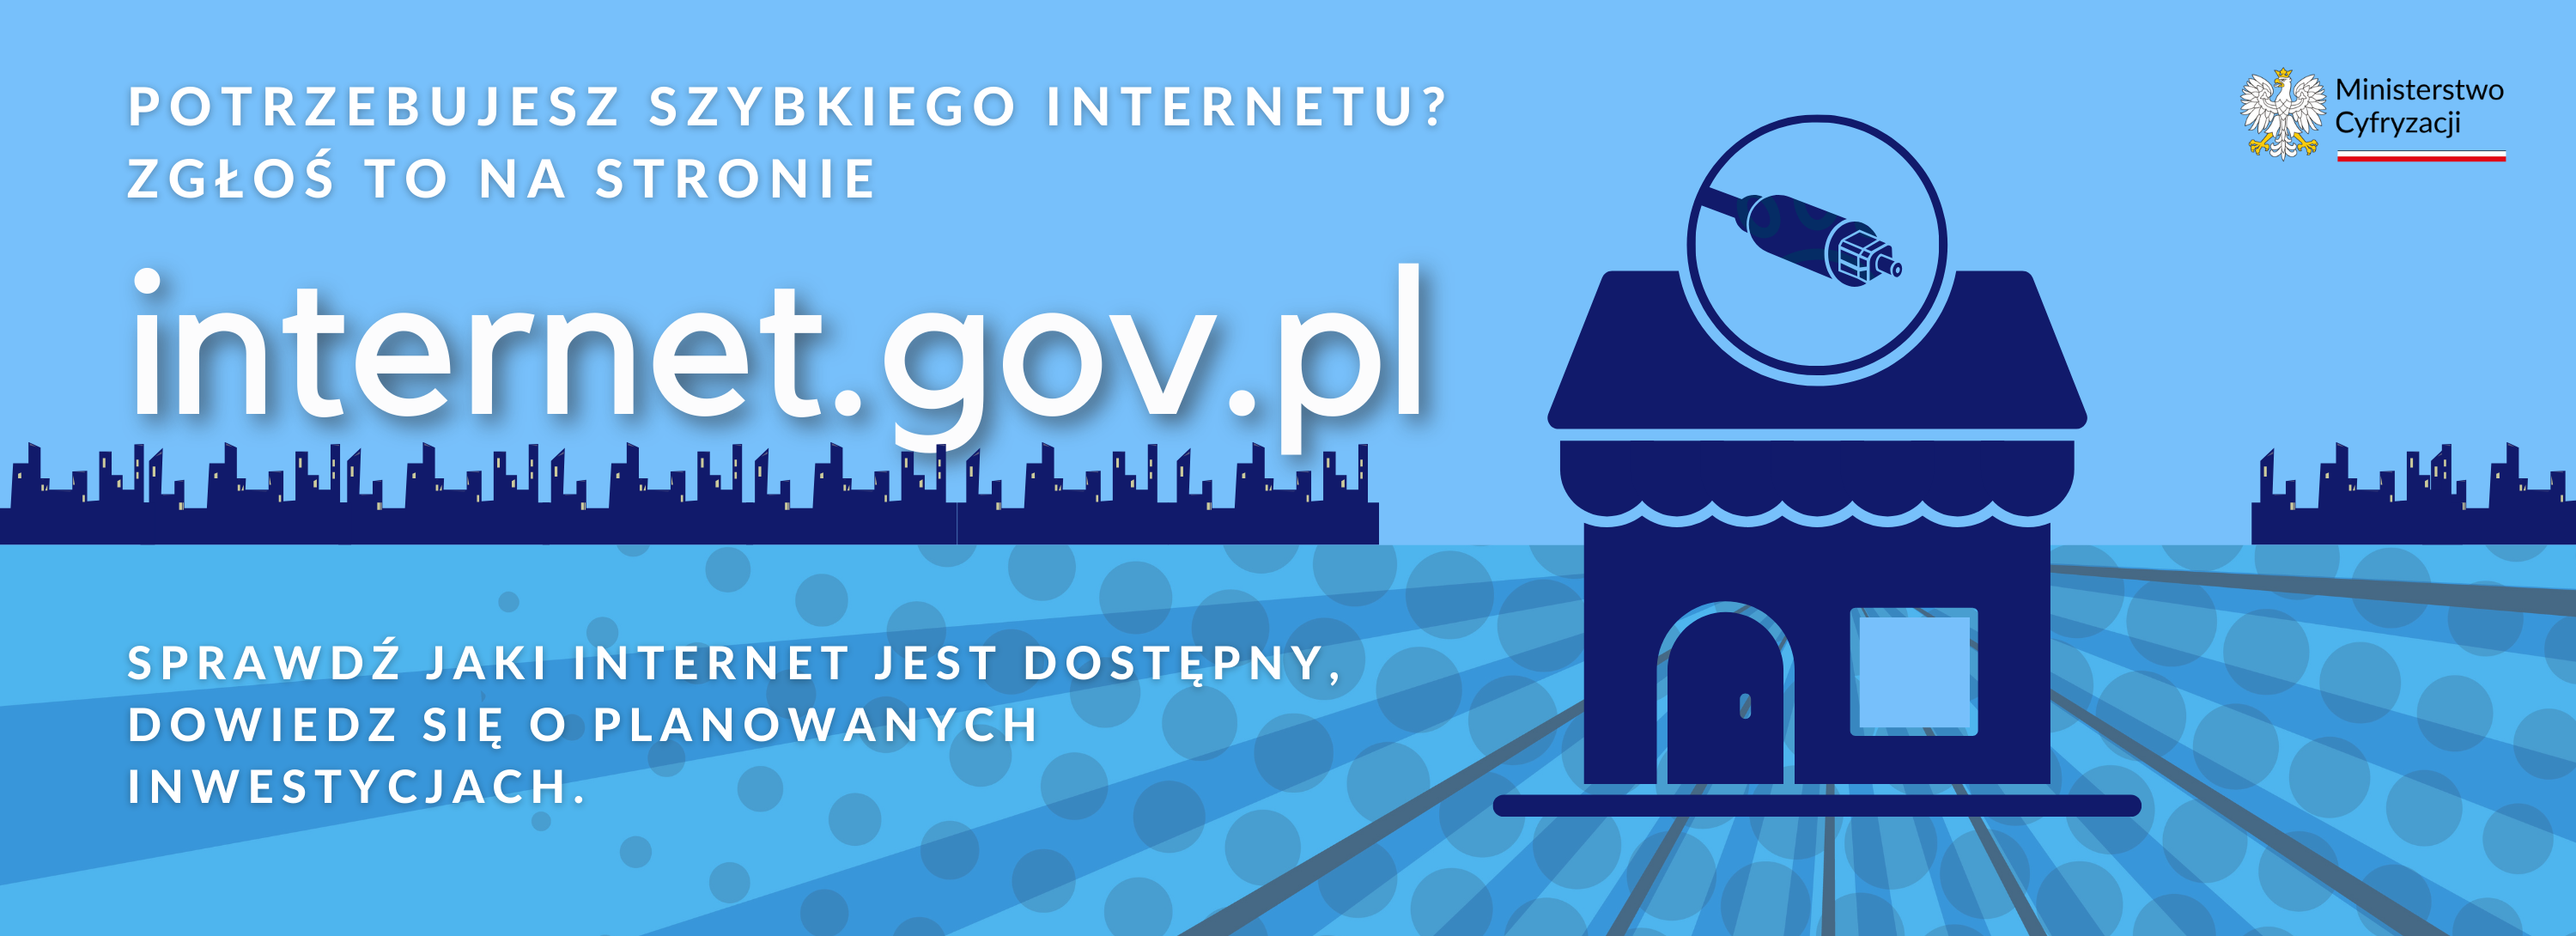 Baner strony internet.gov.pl